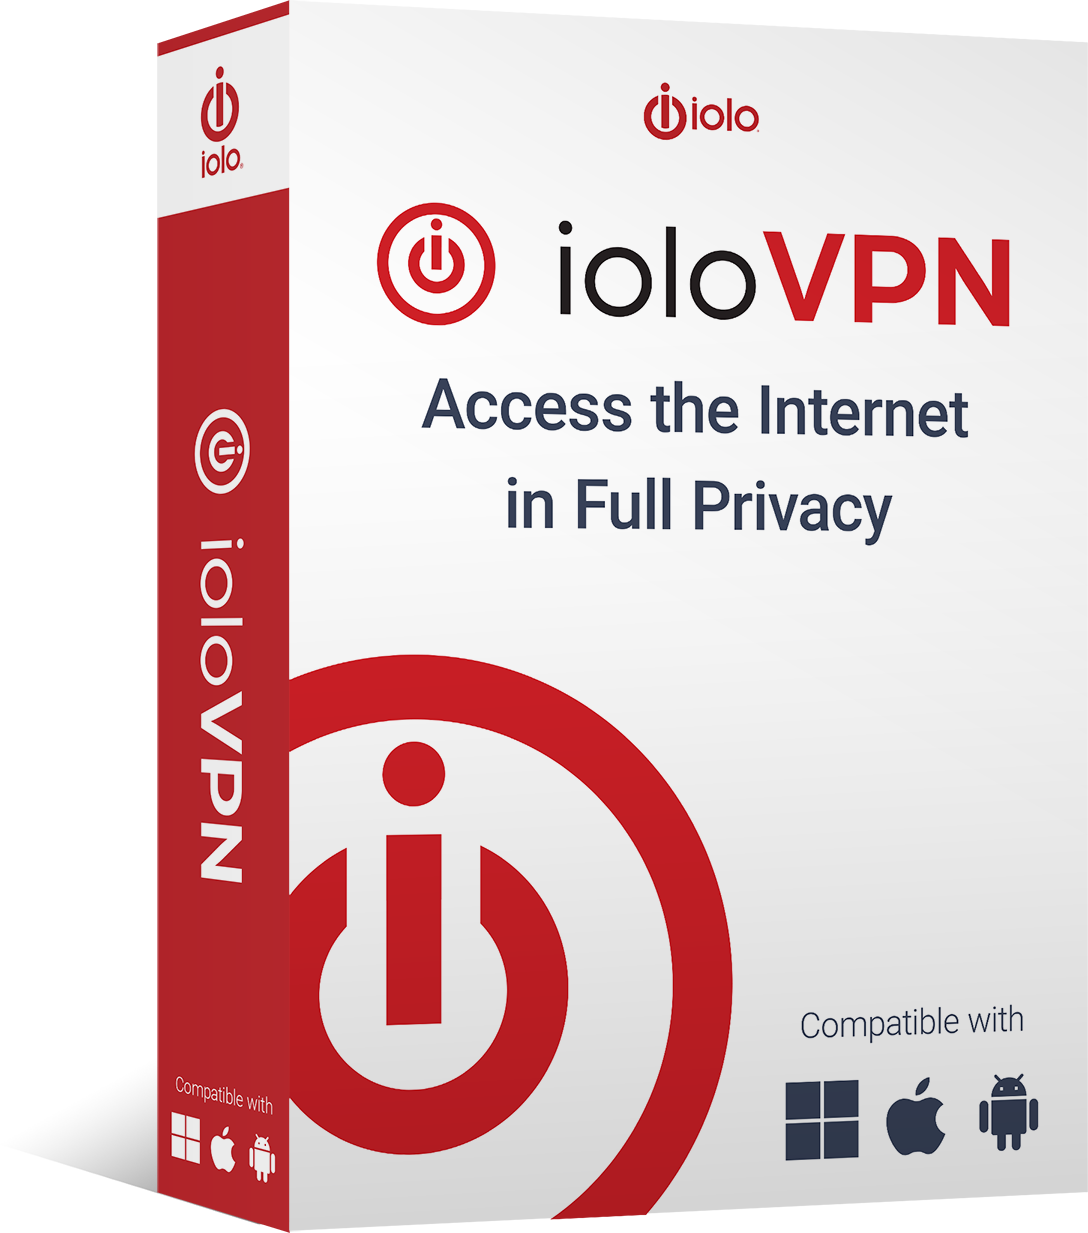 iolo VPN box facing right